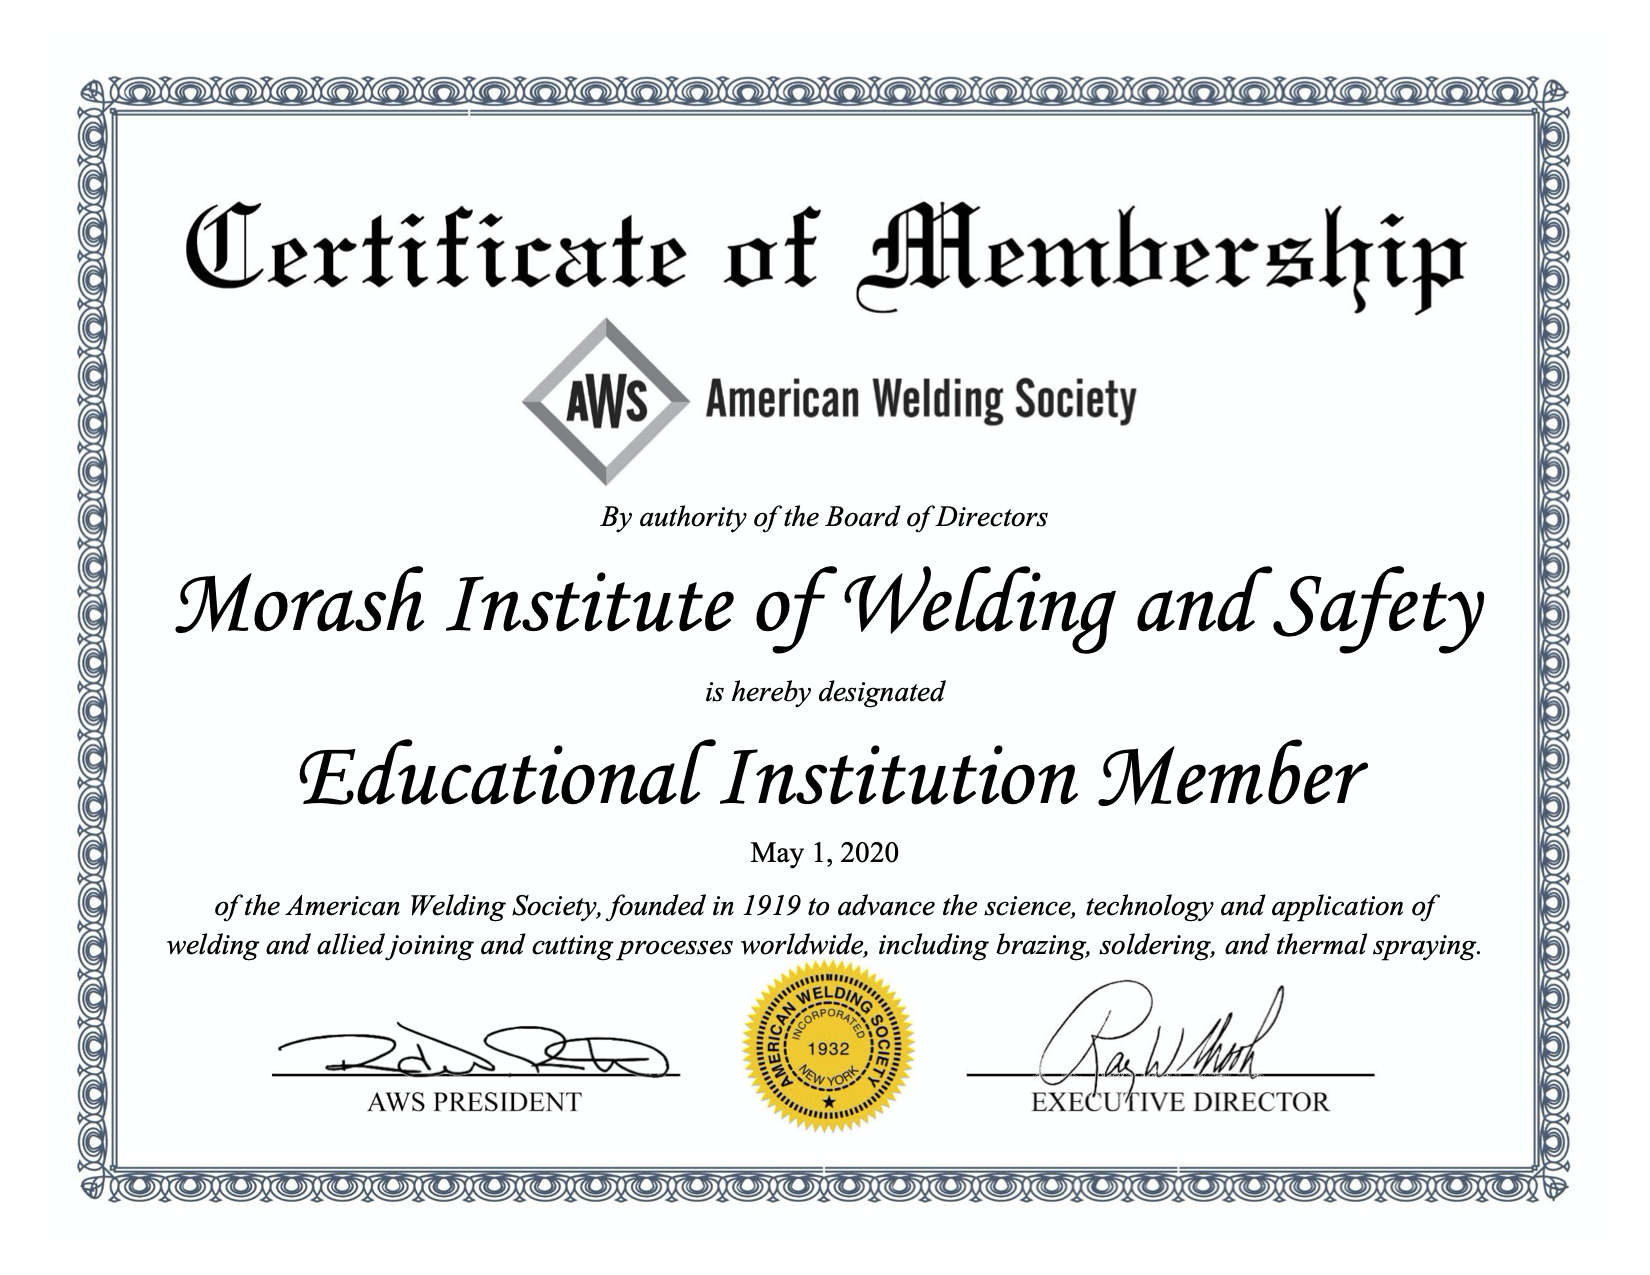 AWS Certificate of Membership